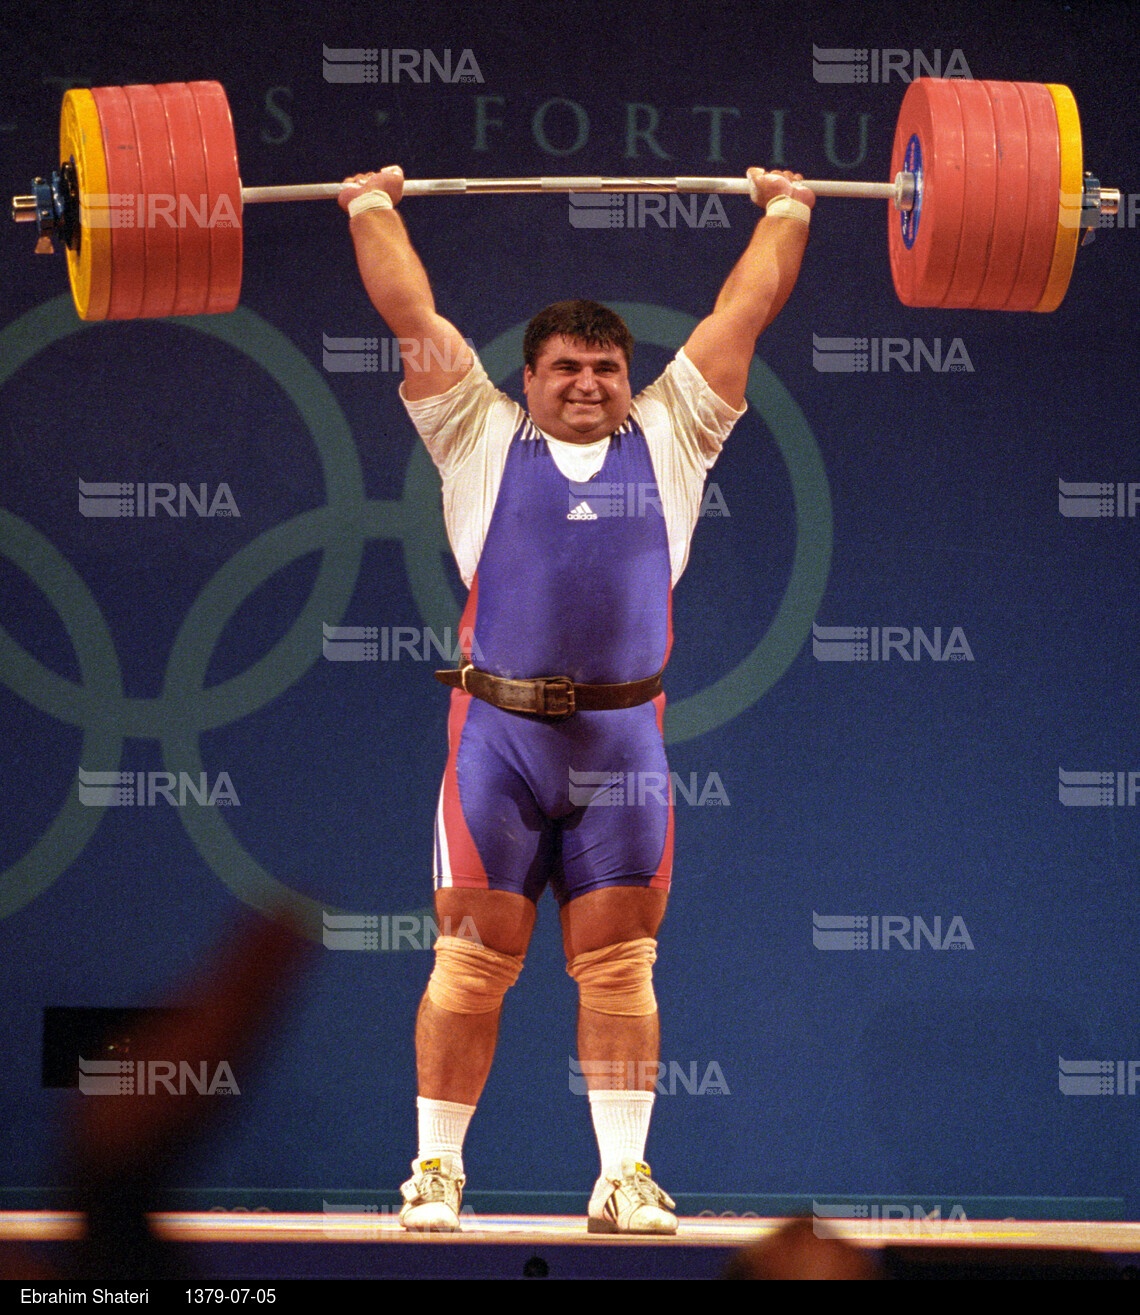 مسابقات وزنه برداری المپیک 2000 سیدنی